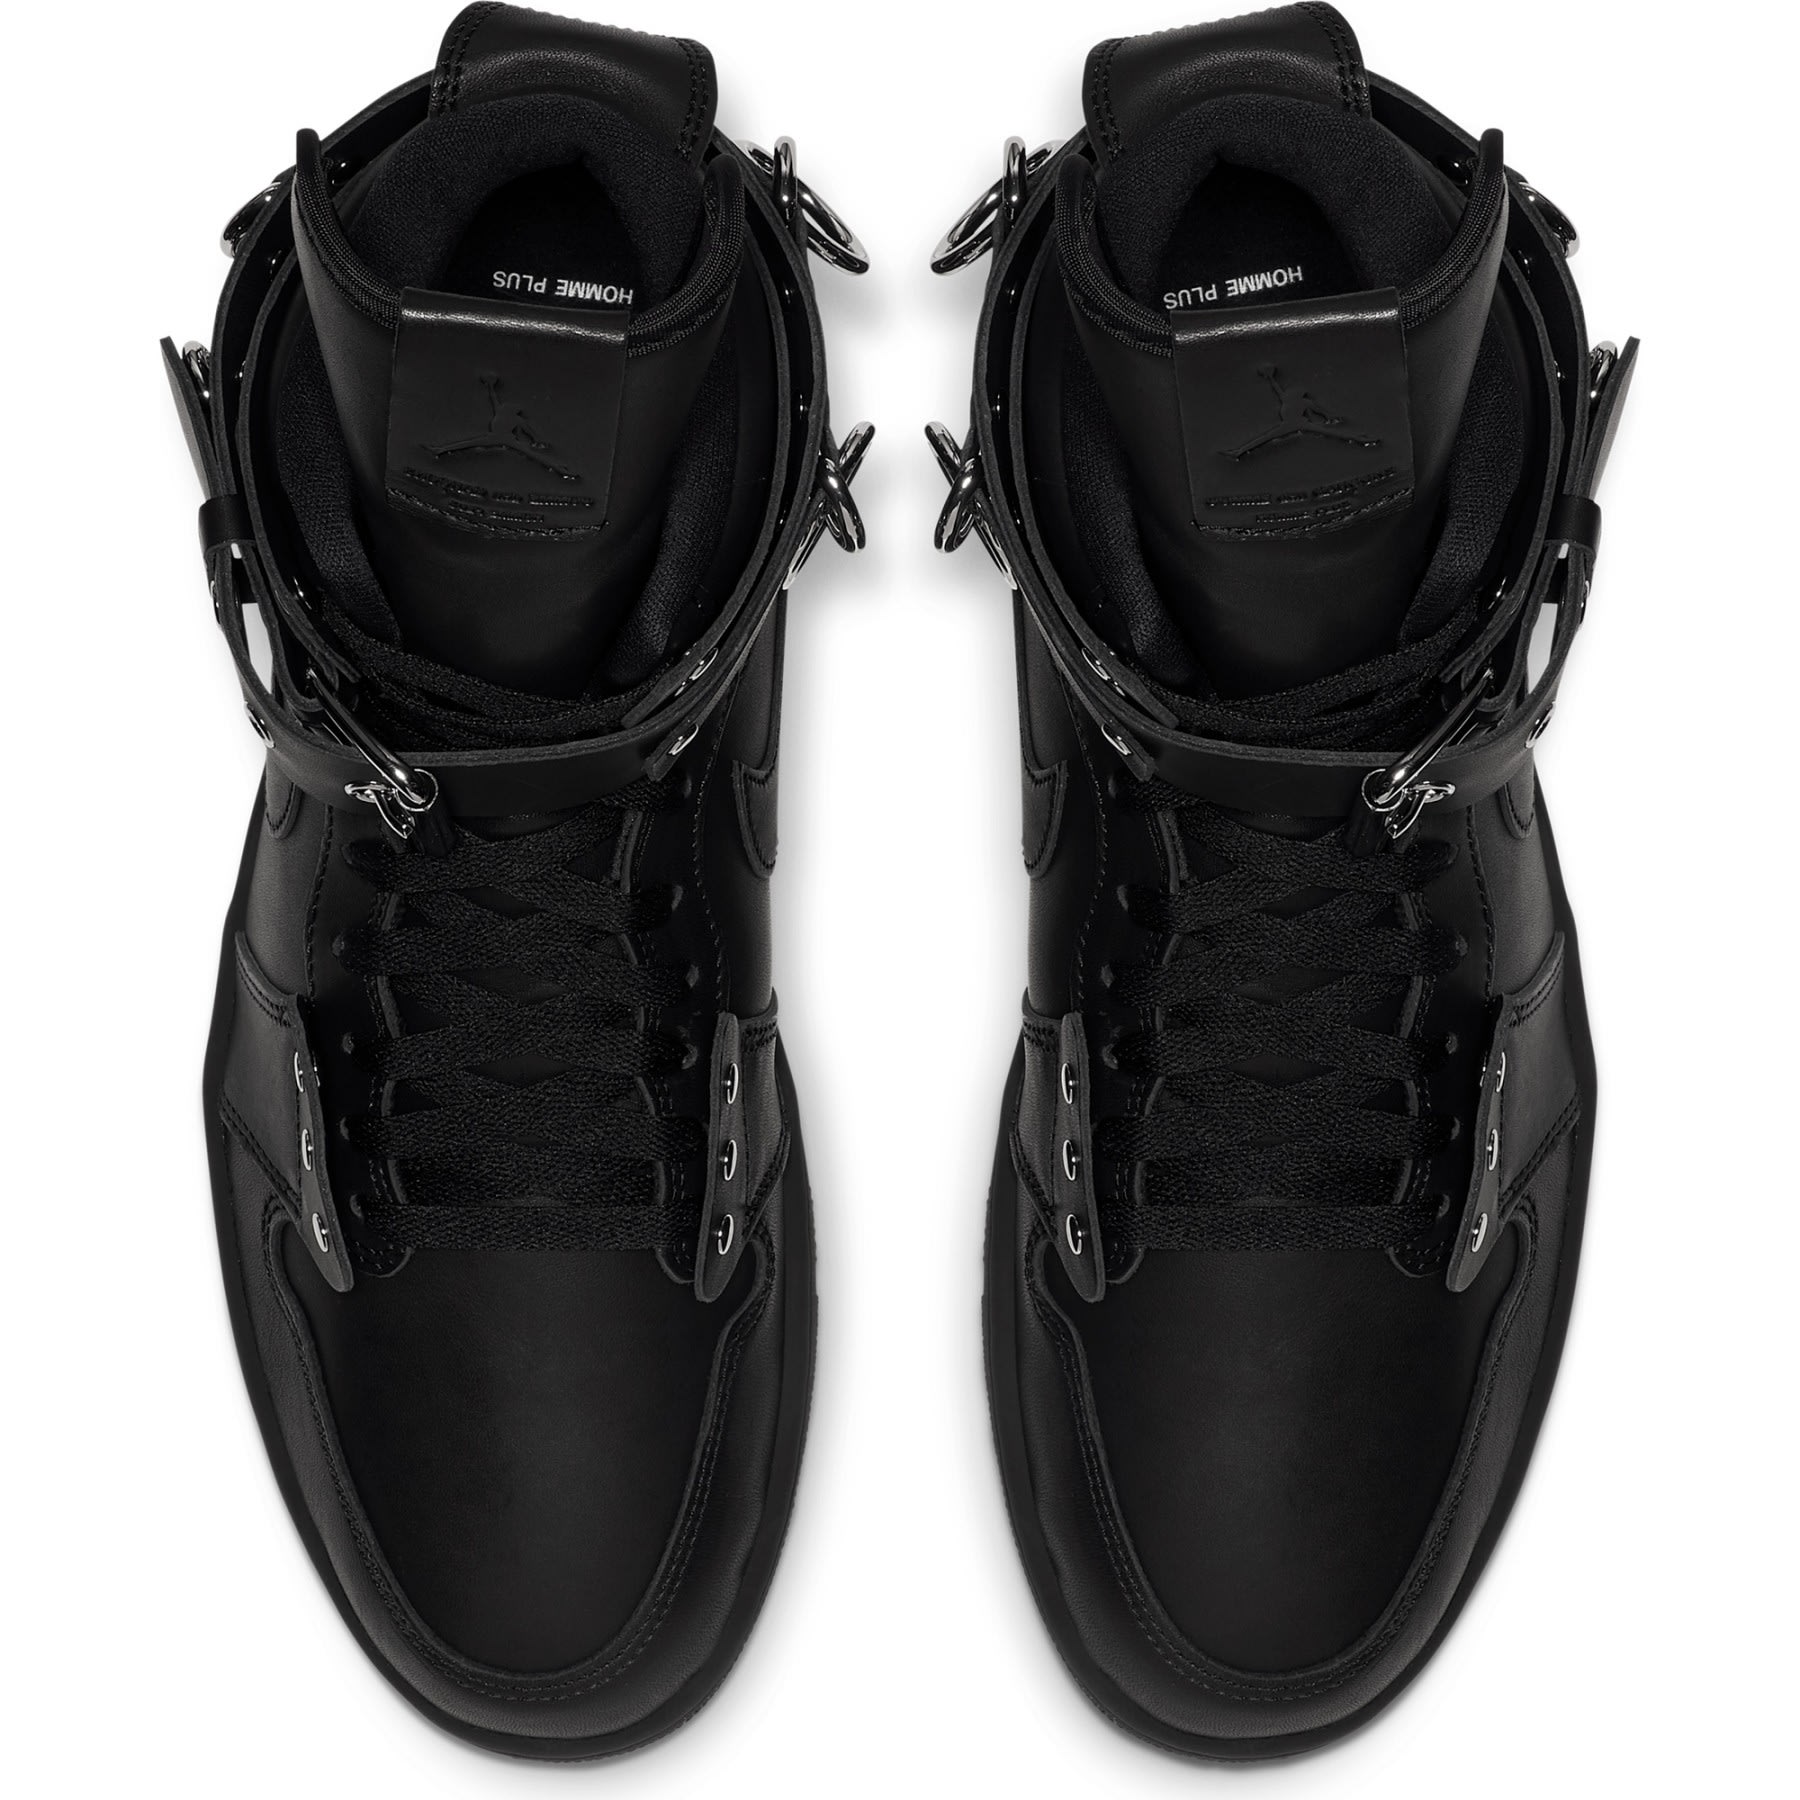 Comme des Garcons HOMME Plus Air Jordan 1 High Black White Release 